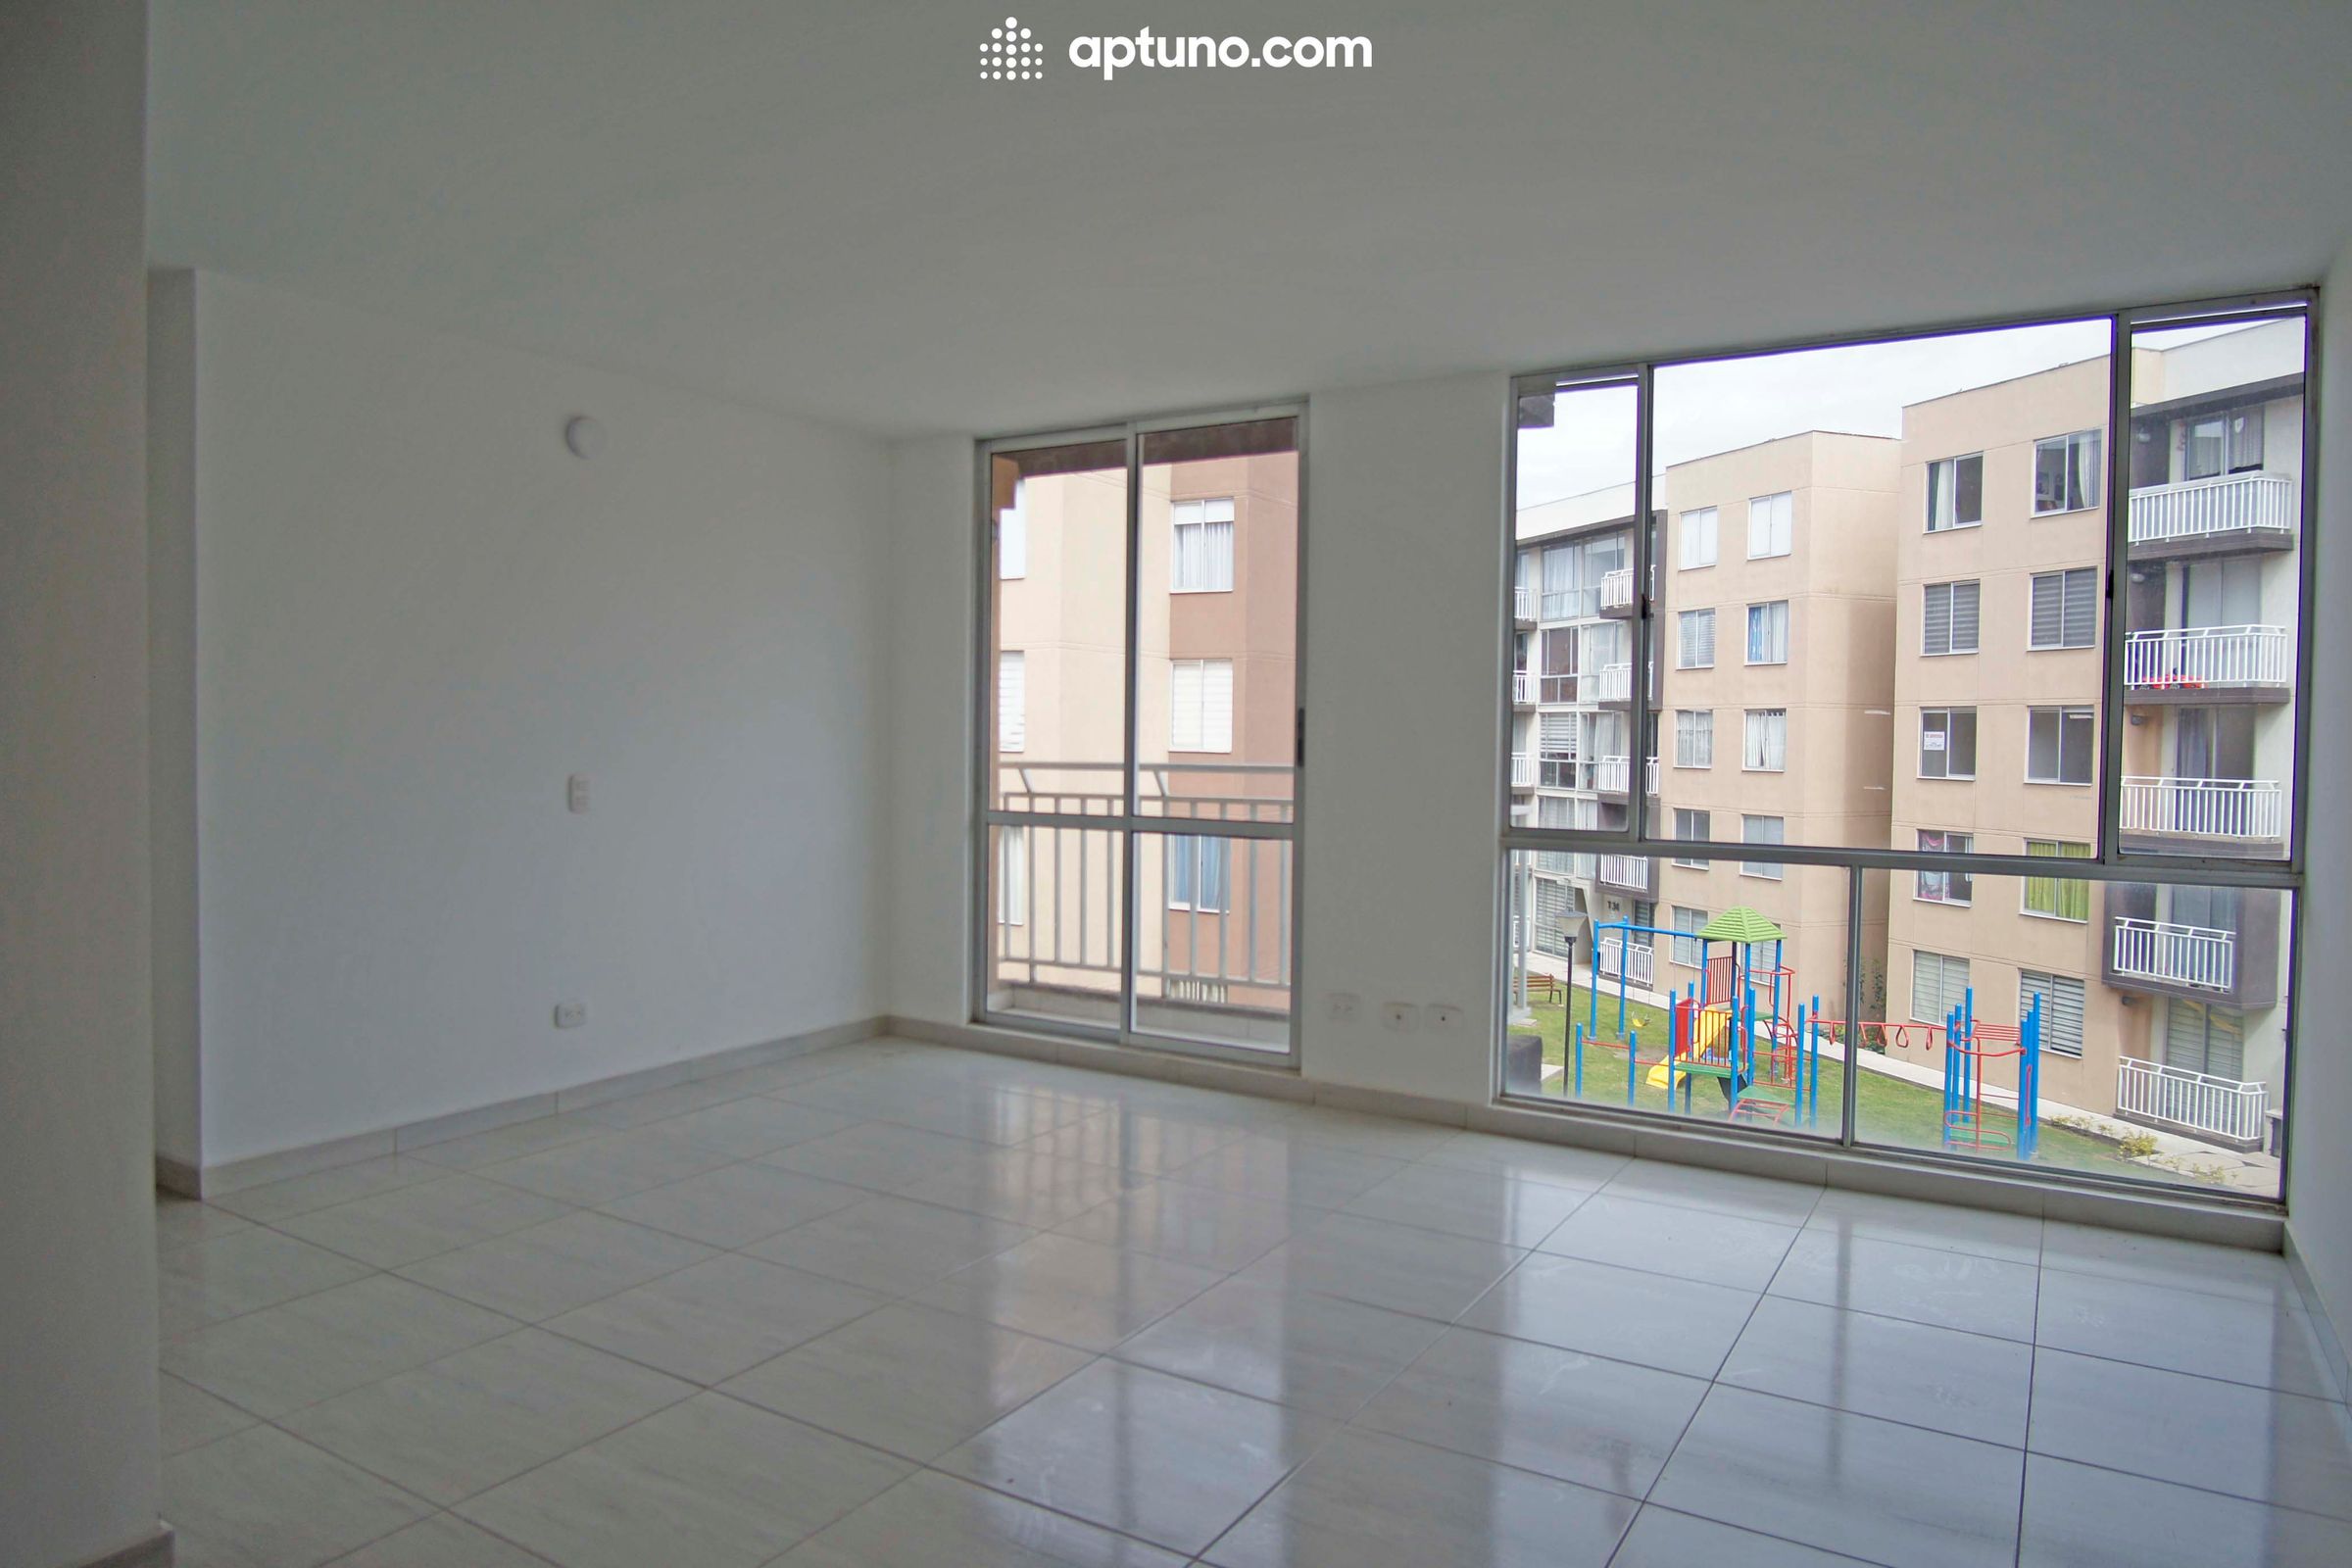 Apartamento en arriendo Zipaquirá 65 m² - $ 820.000,00